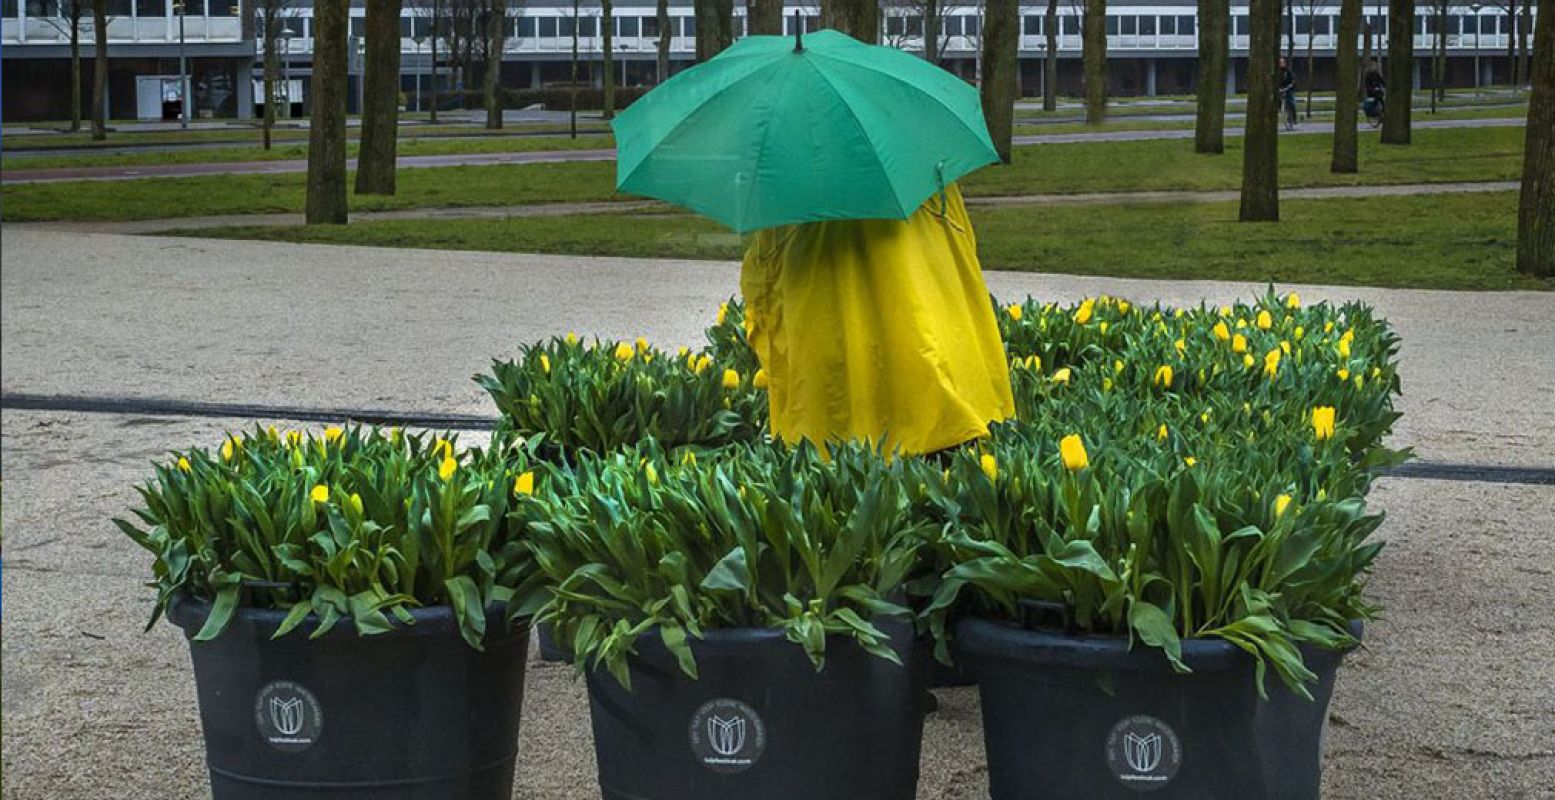 Ook in de regen is het genieten van de tulpen. Foto: ©TulpFestivalAmsterdam 2018 / fotograaf John Lewis Marshall